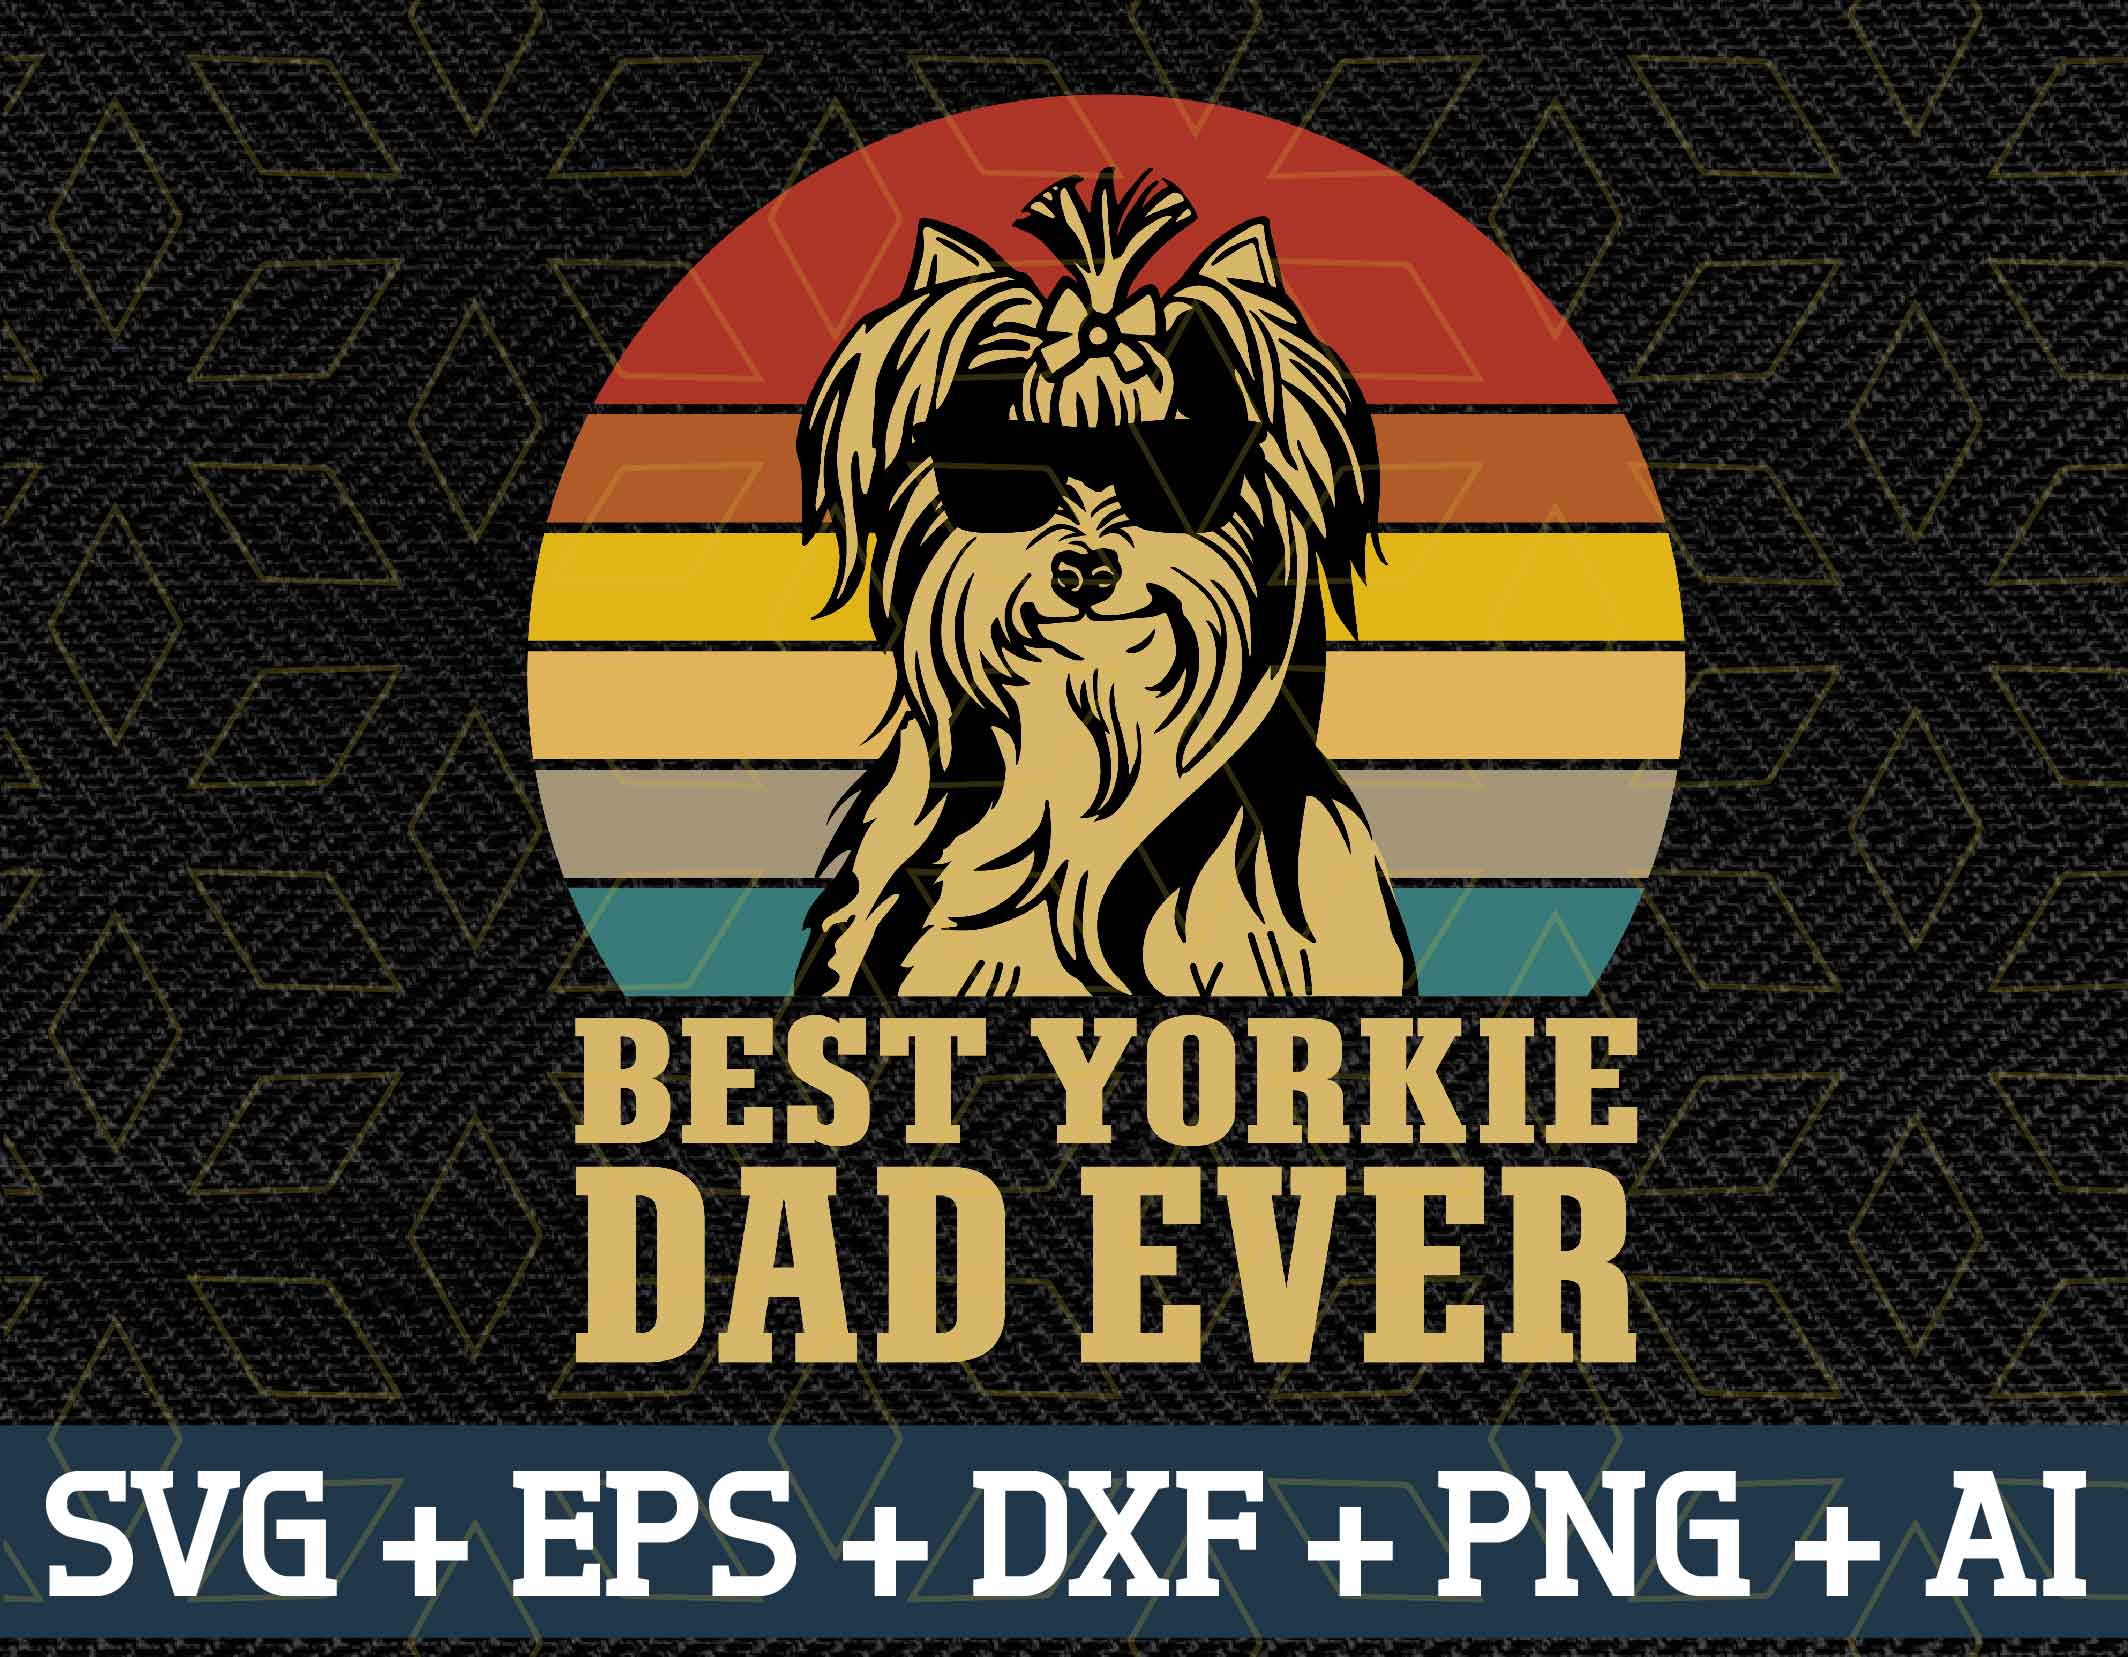 Download Best Yorkie dad ever svg, png, eps, dxf digital - Designbtf.com